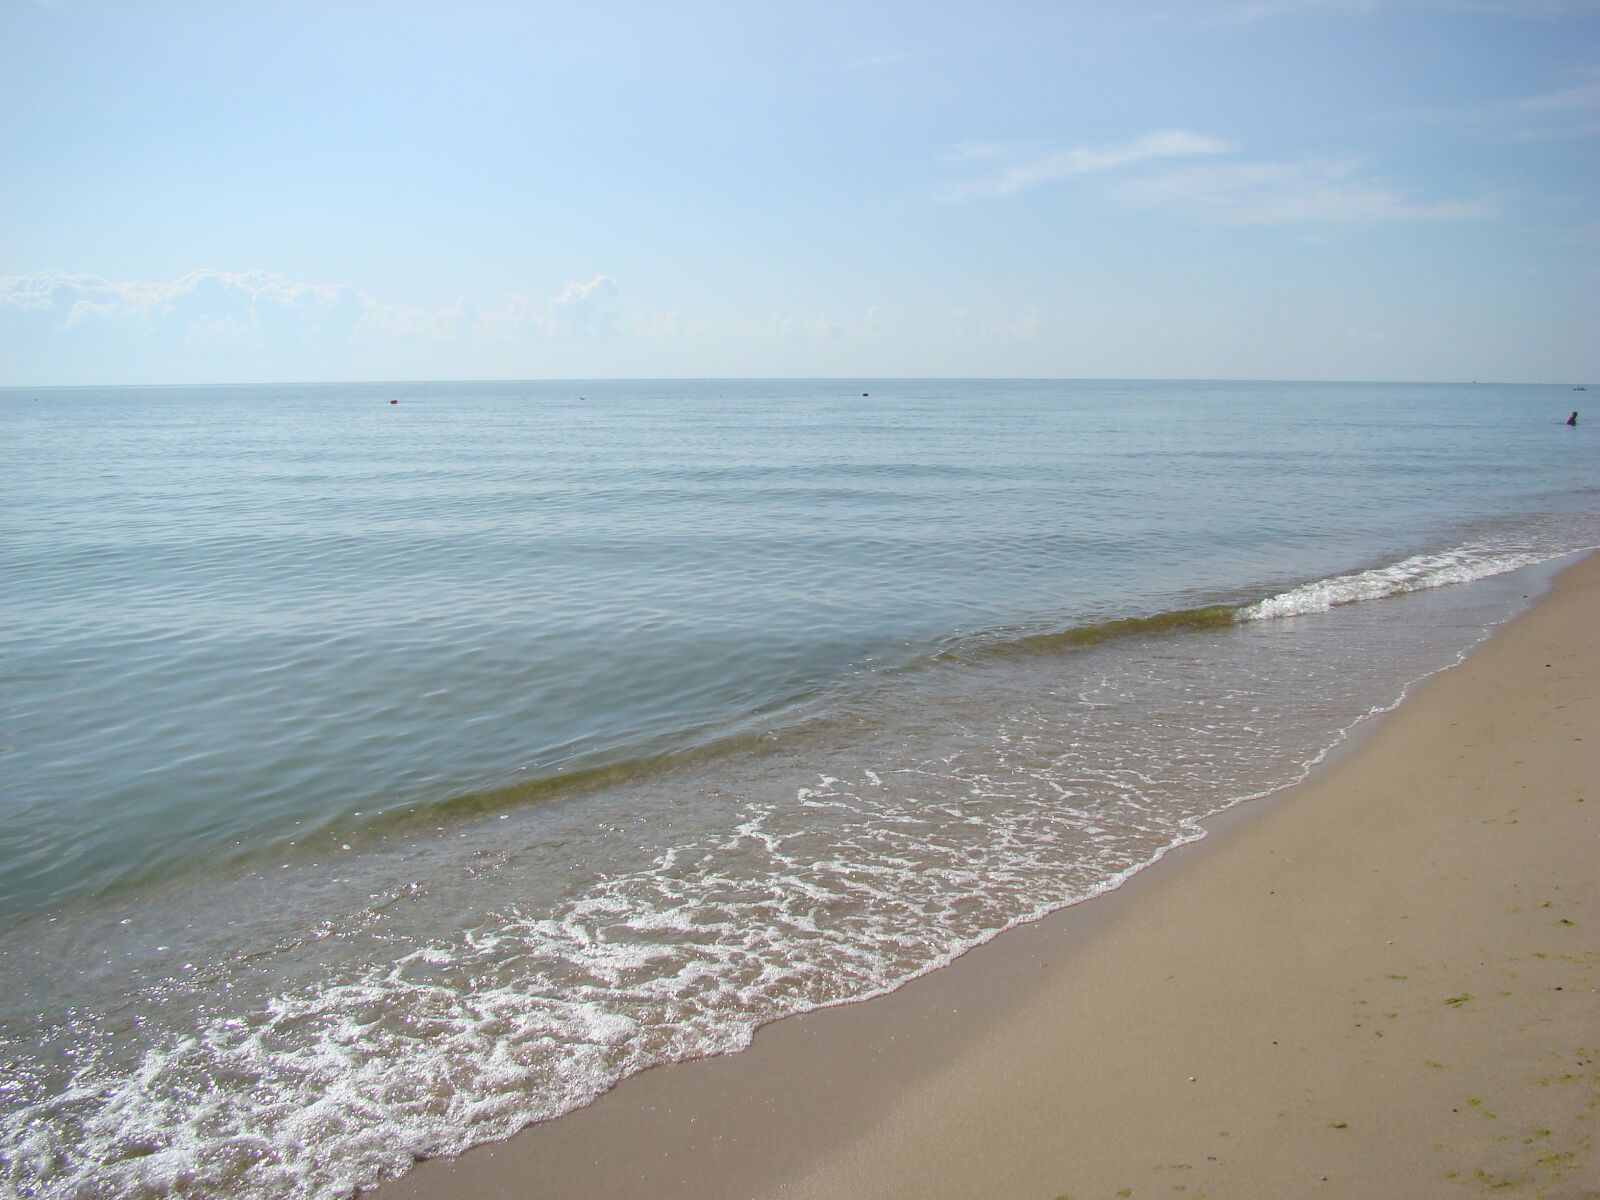 Sony DSC-H9 sample photo. Sea, beach, sky photography